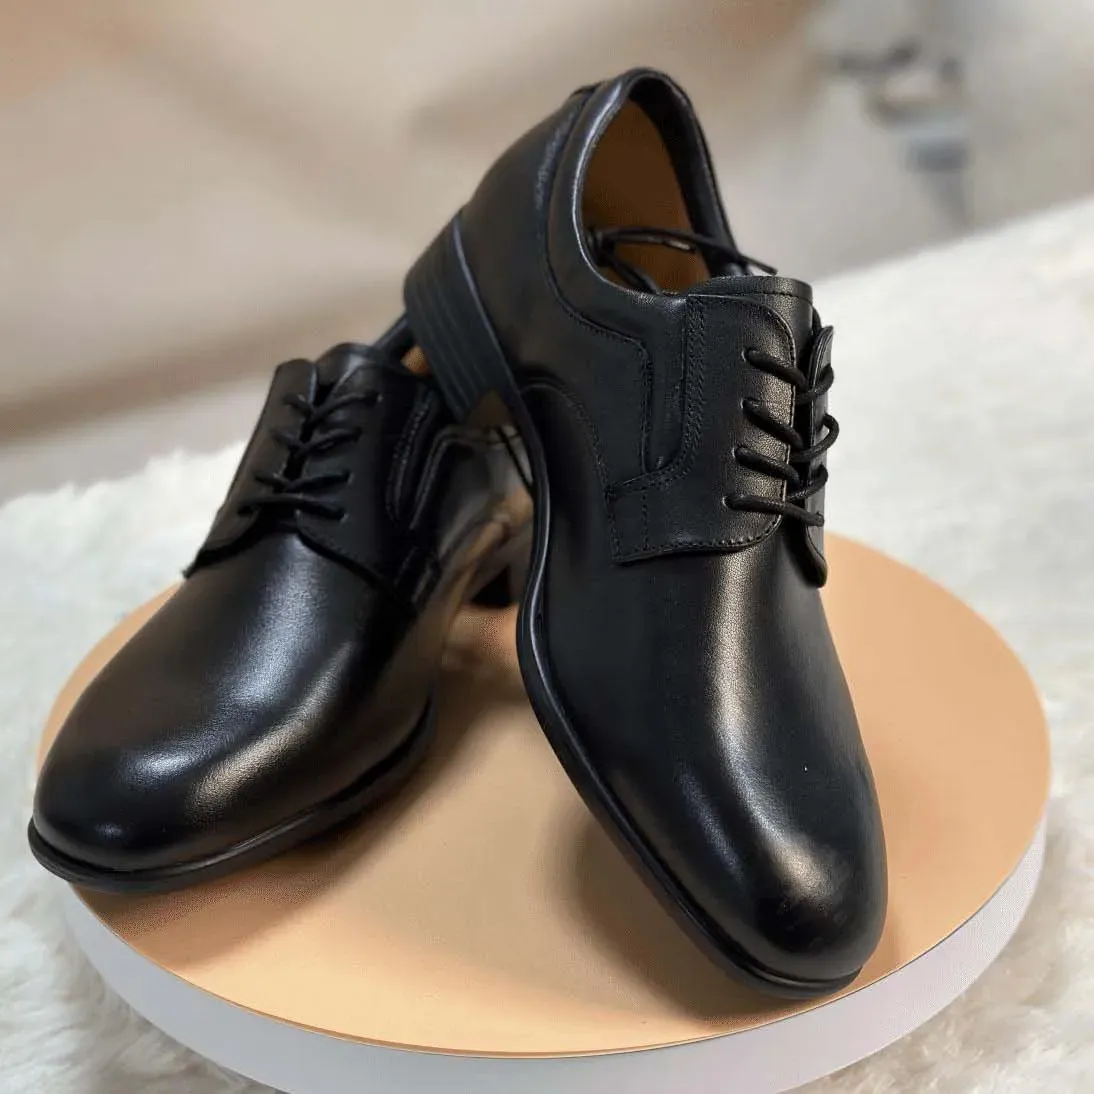 Nuovo Design all'ingrosso scarpe formali popolari di nuova moda scarpe nere comode su misura scarpe eleganti per gli uomini